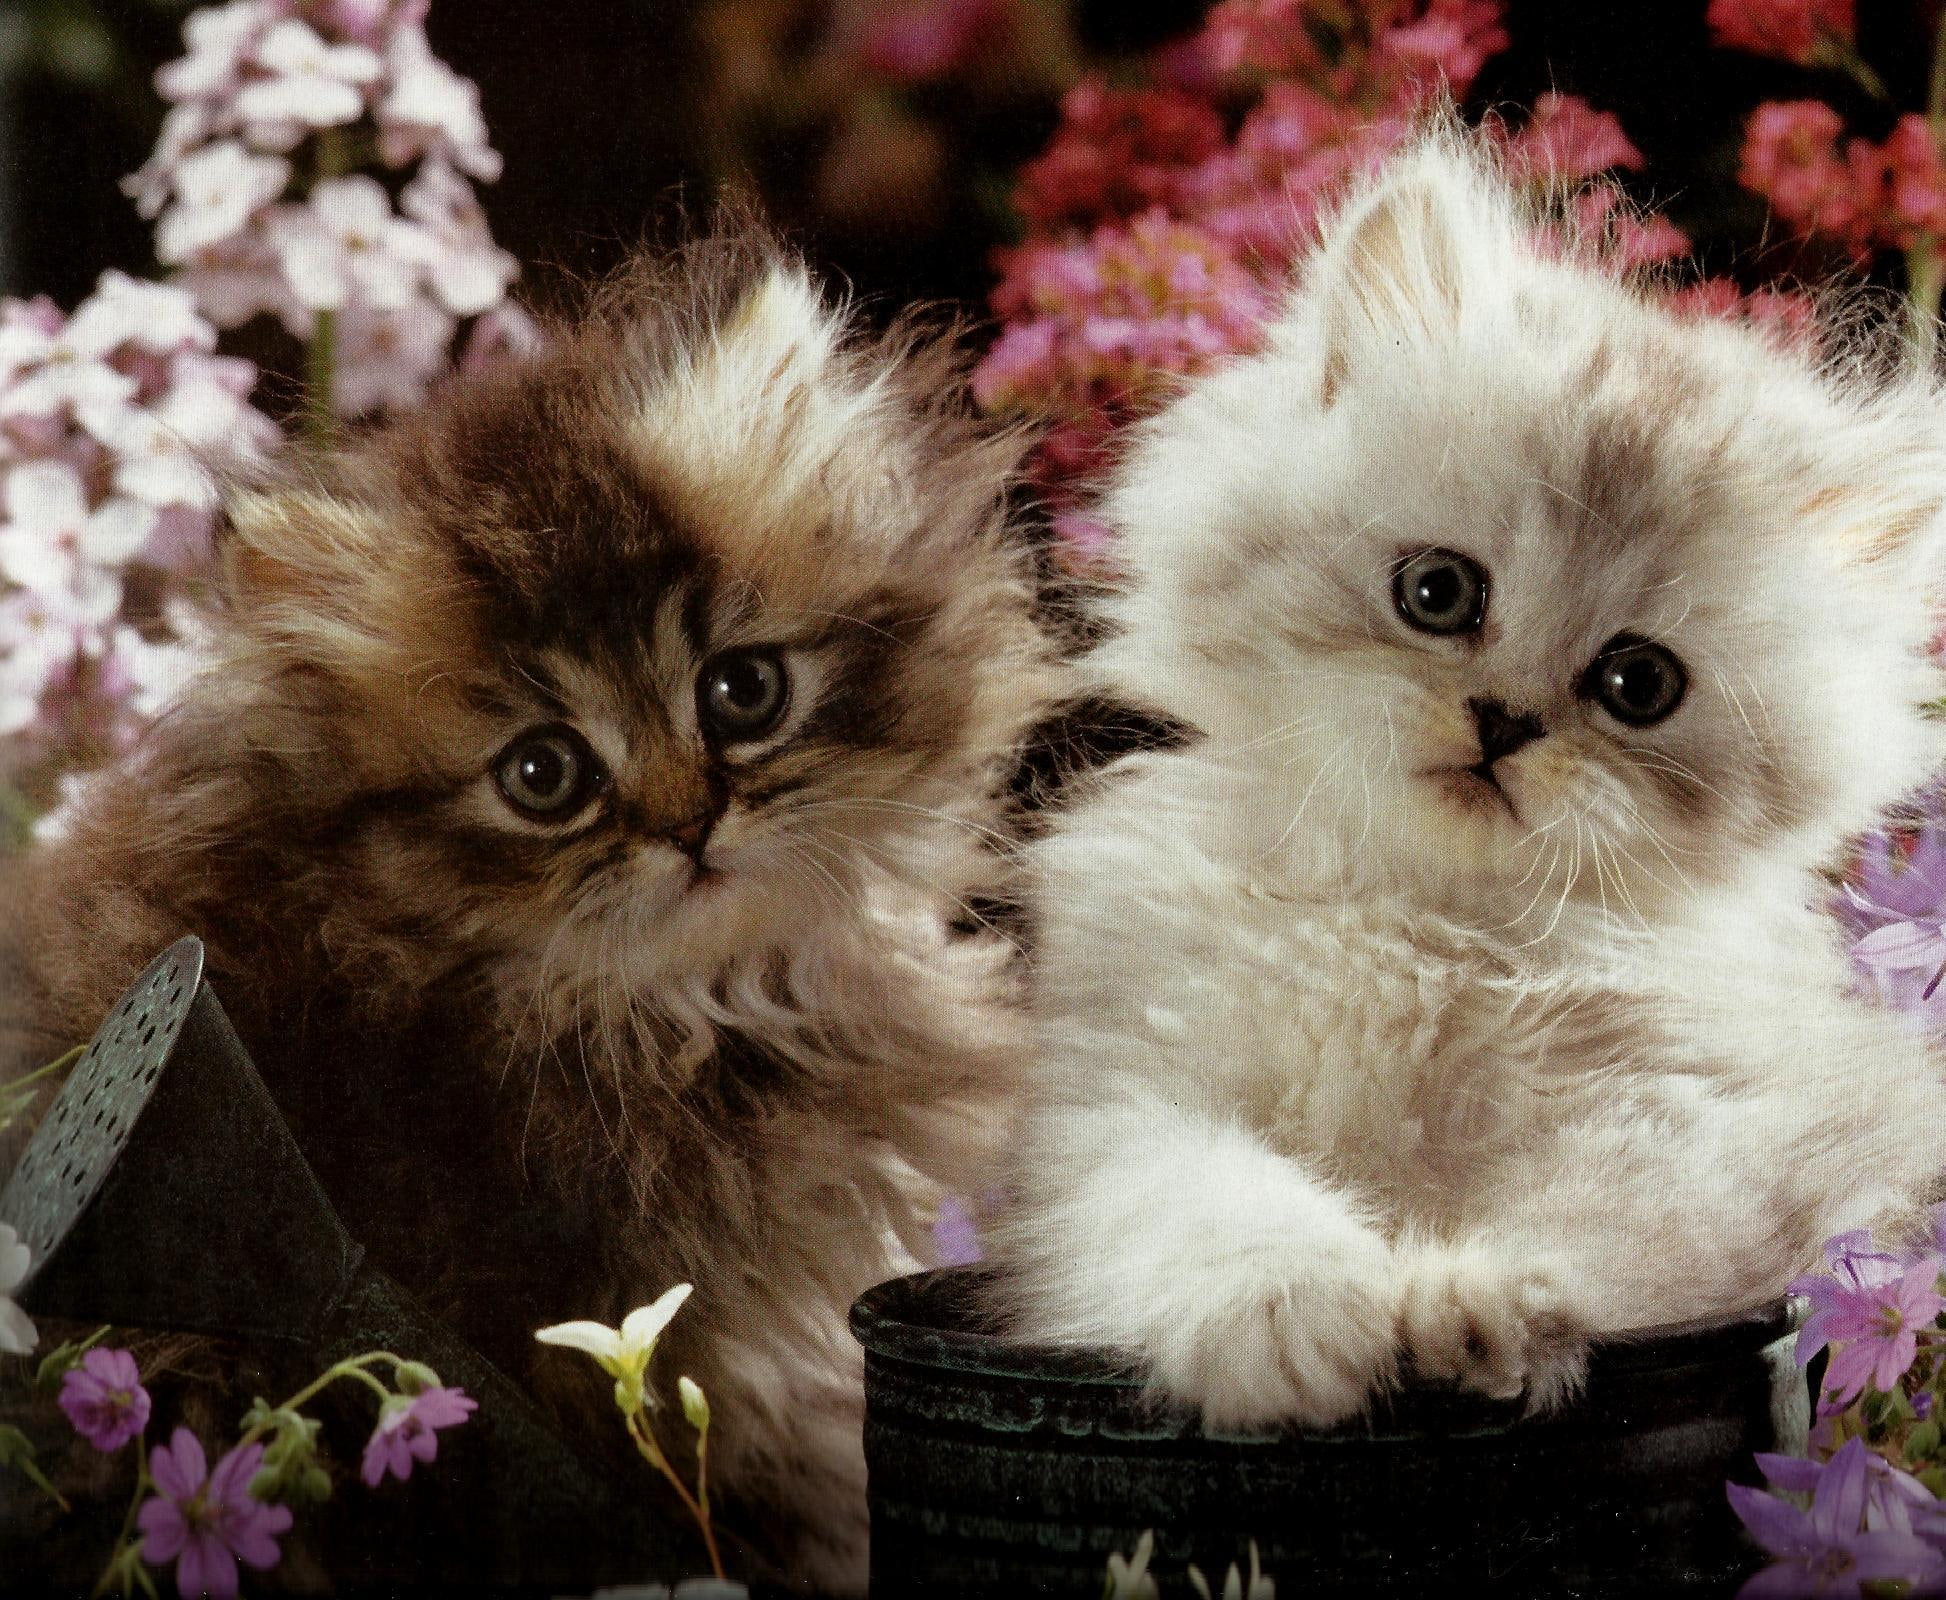 Two Kittens In A Flowerpot, two kittens, feline, water can, flowers